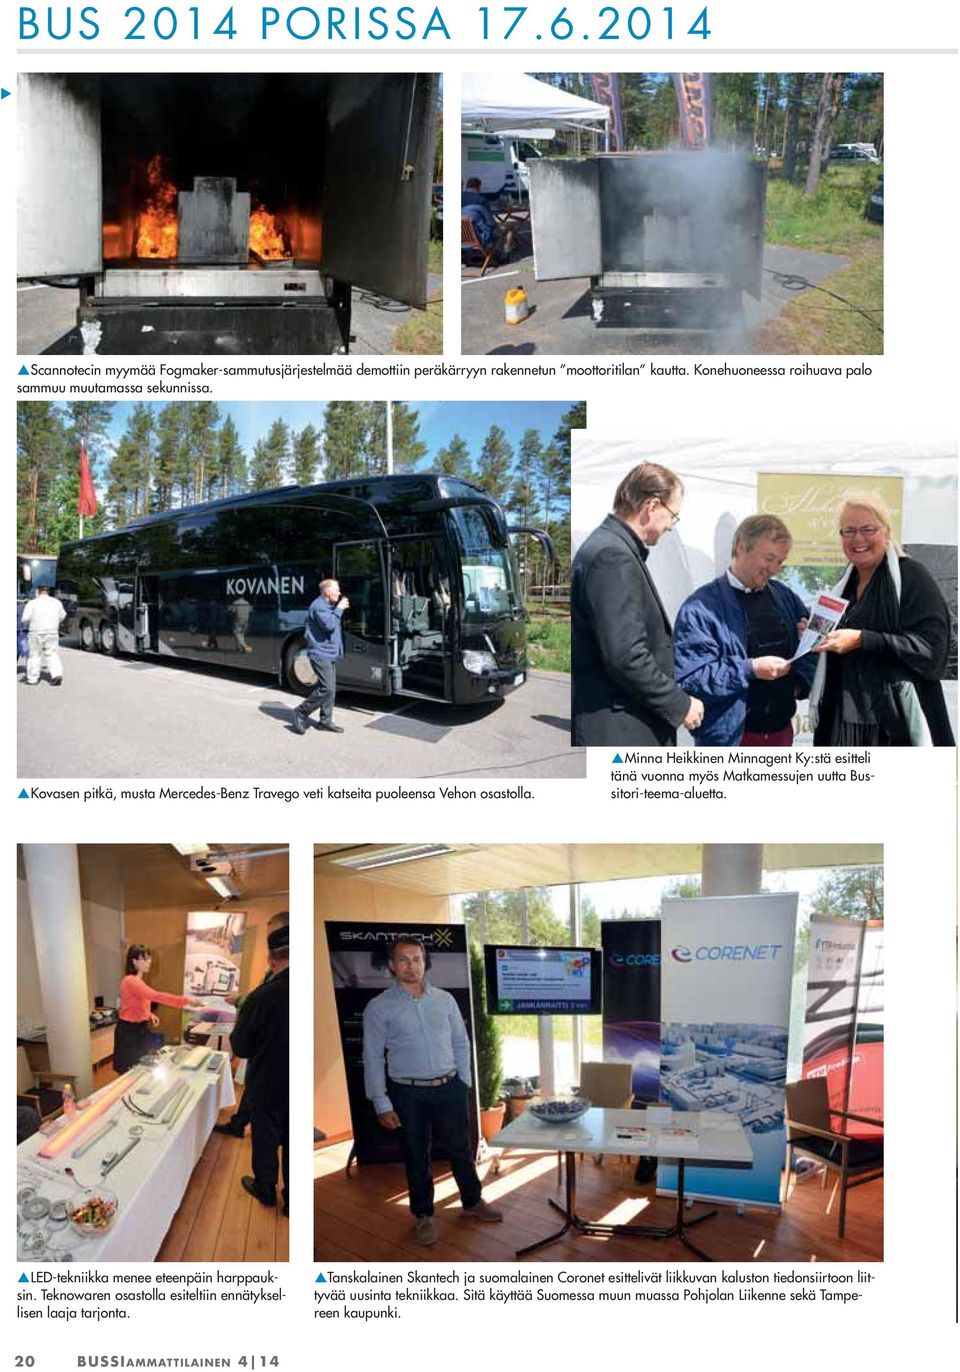 Minna Heikkinen Minnagent Ky:stä esitteli tänä vuonna myös Matkamessujen uutta Bussitori-teema-aluetta. LED-tekniikka menee eteenpäin harppauksin.